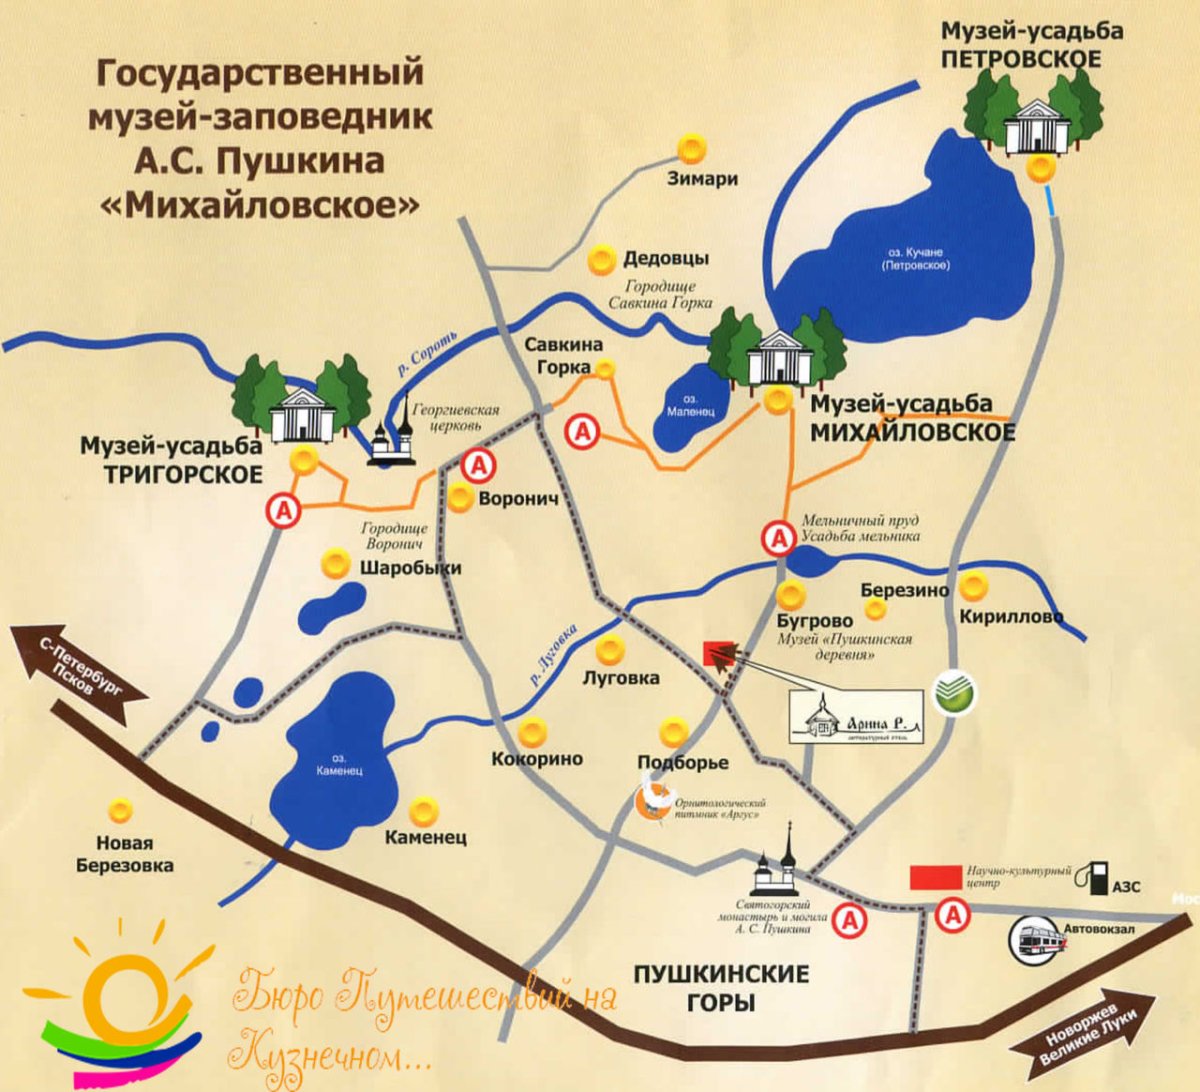 Пушкинские горы музей-заповедник карта